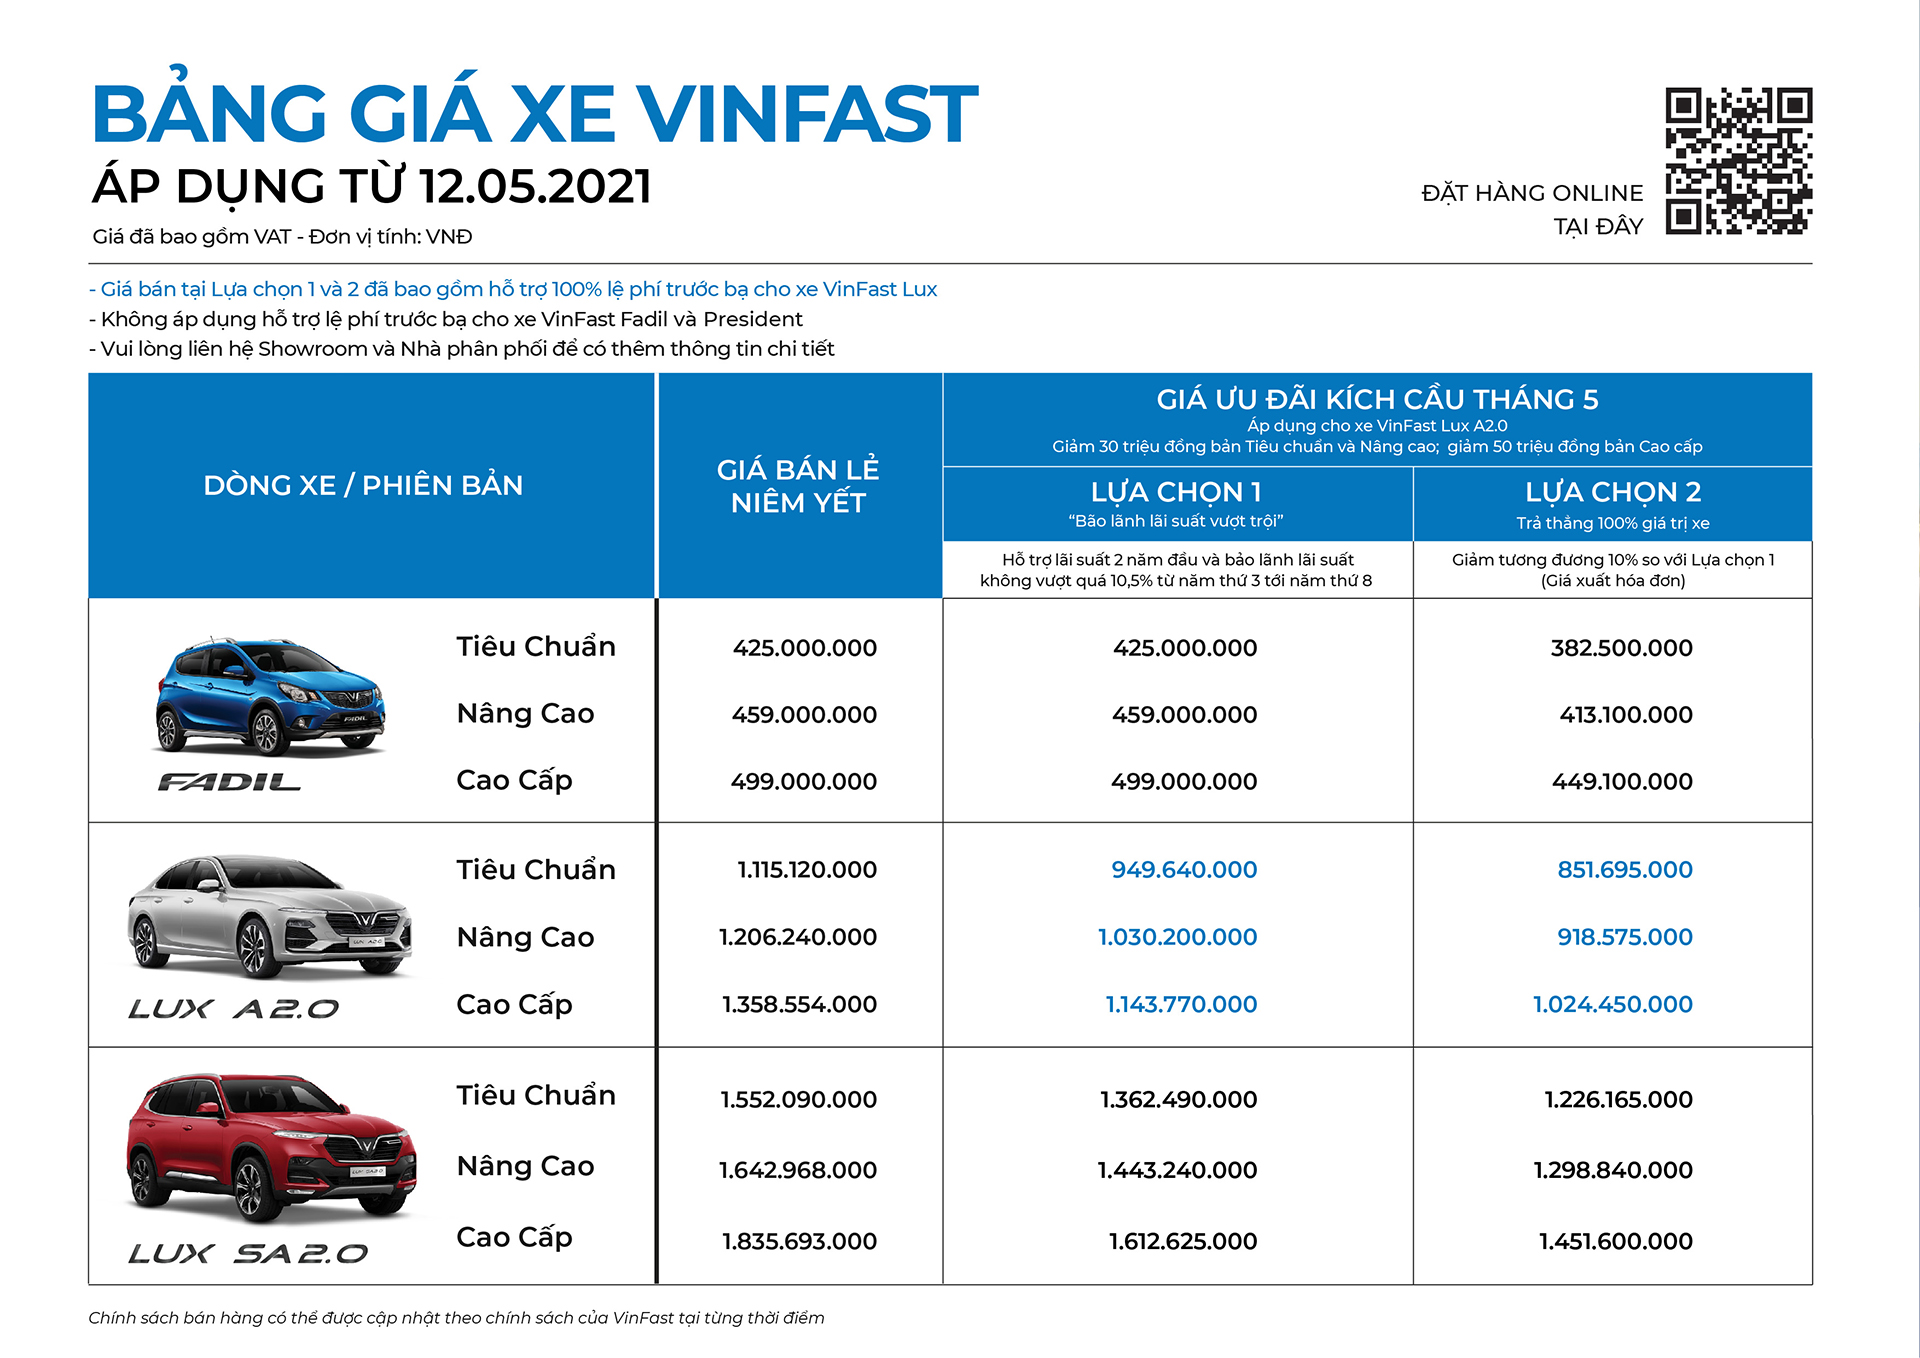 Cơ hội sở hữu xế sang VinFast Lux A2.0 chỉ từ 851 triệu đồng duy nhất trong tháng 5 - Ảnh 2.